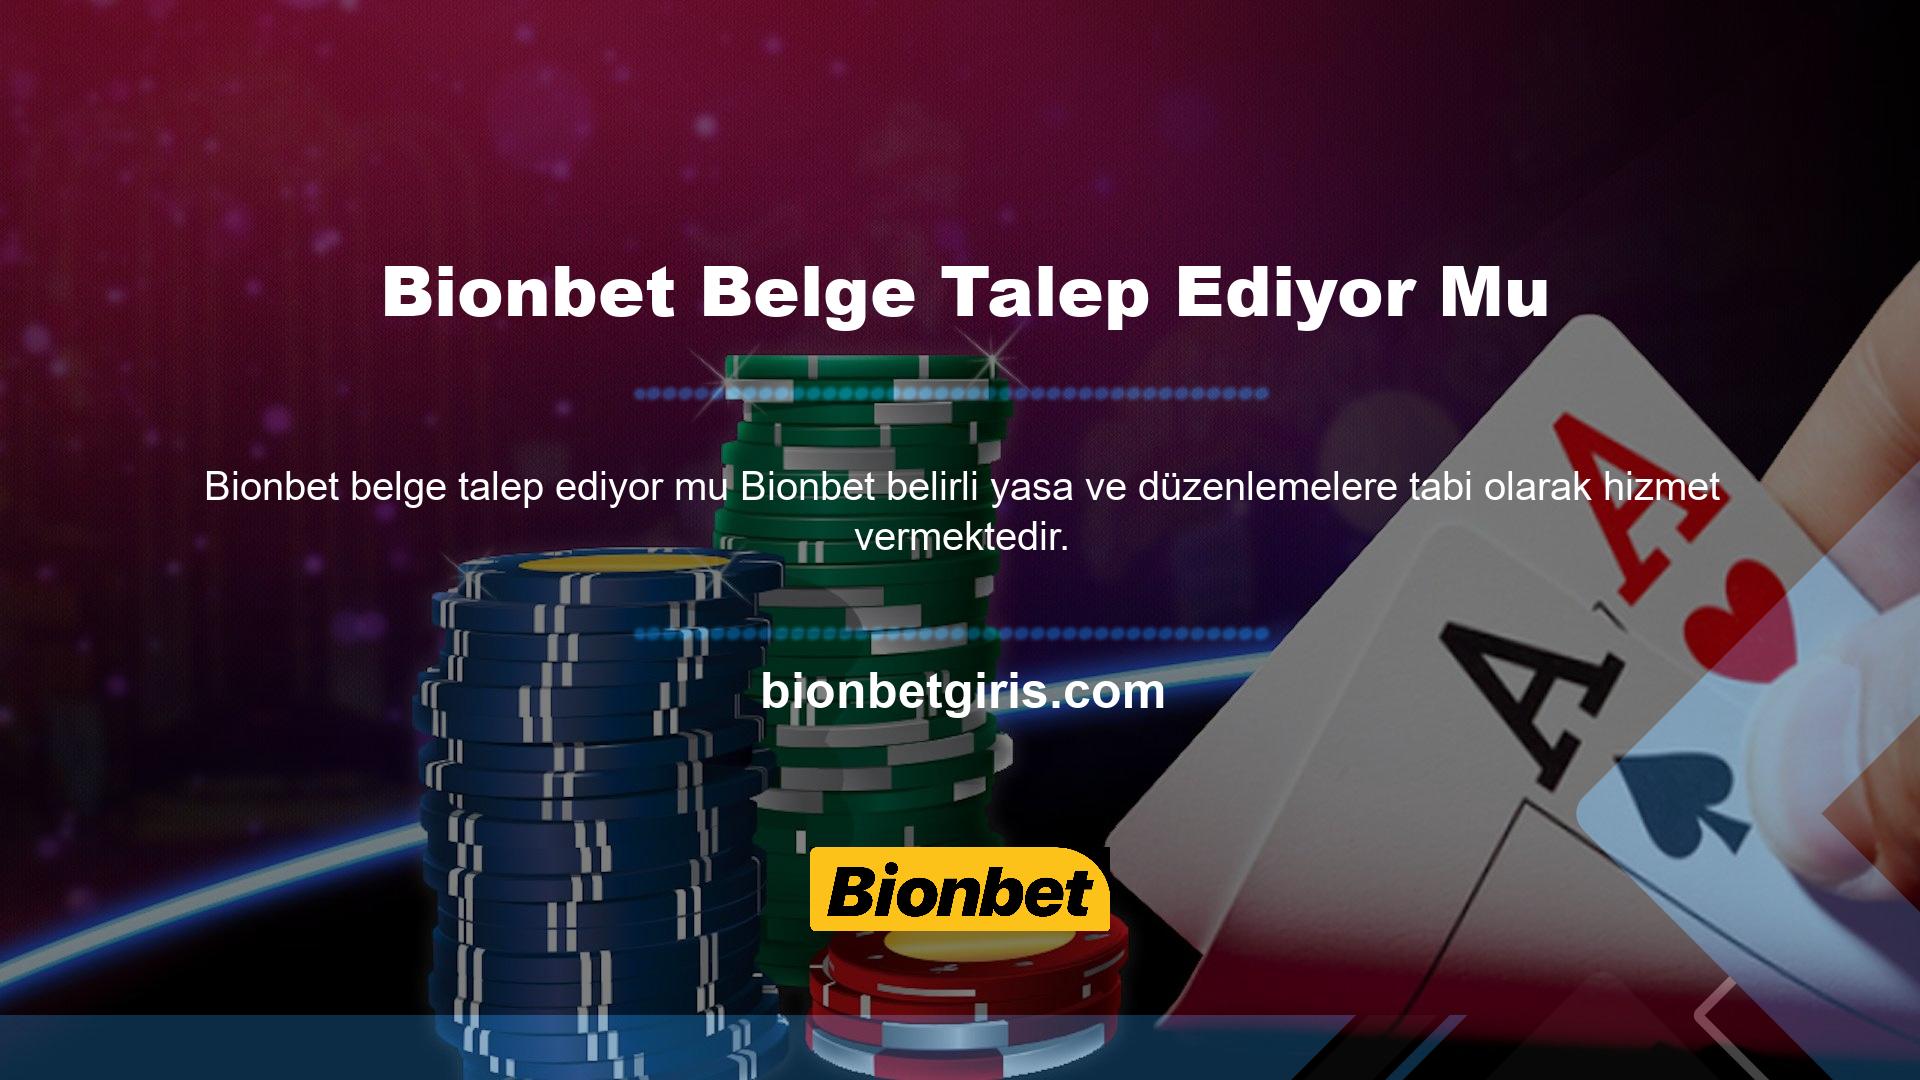 Lisanslı siteler hakkında bilgi almak için Bionbet yorumlarını ve şikayetlerini okuyabilirsiniz